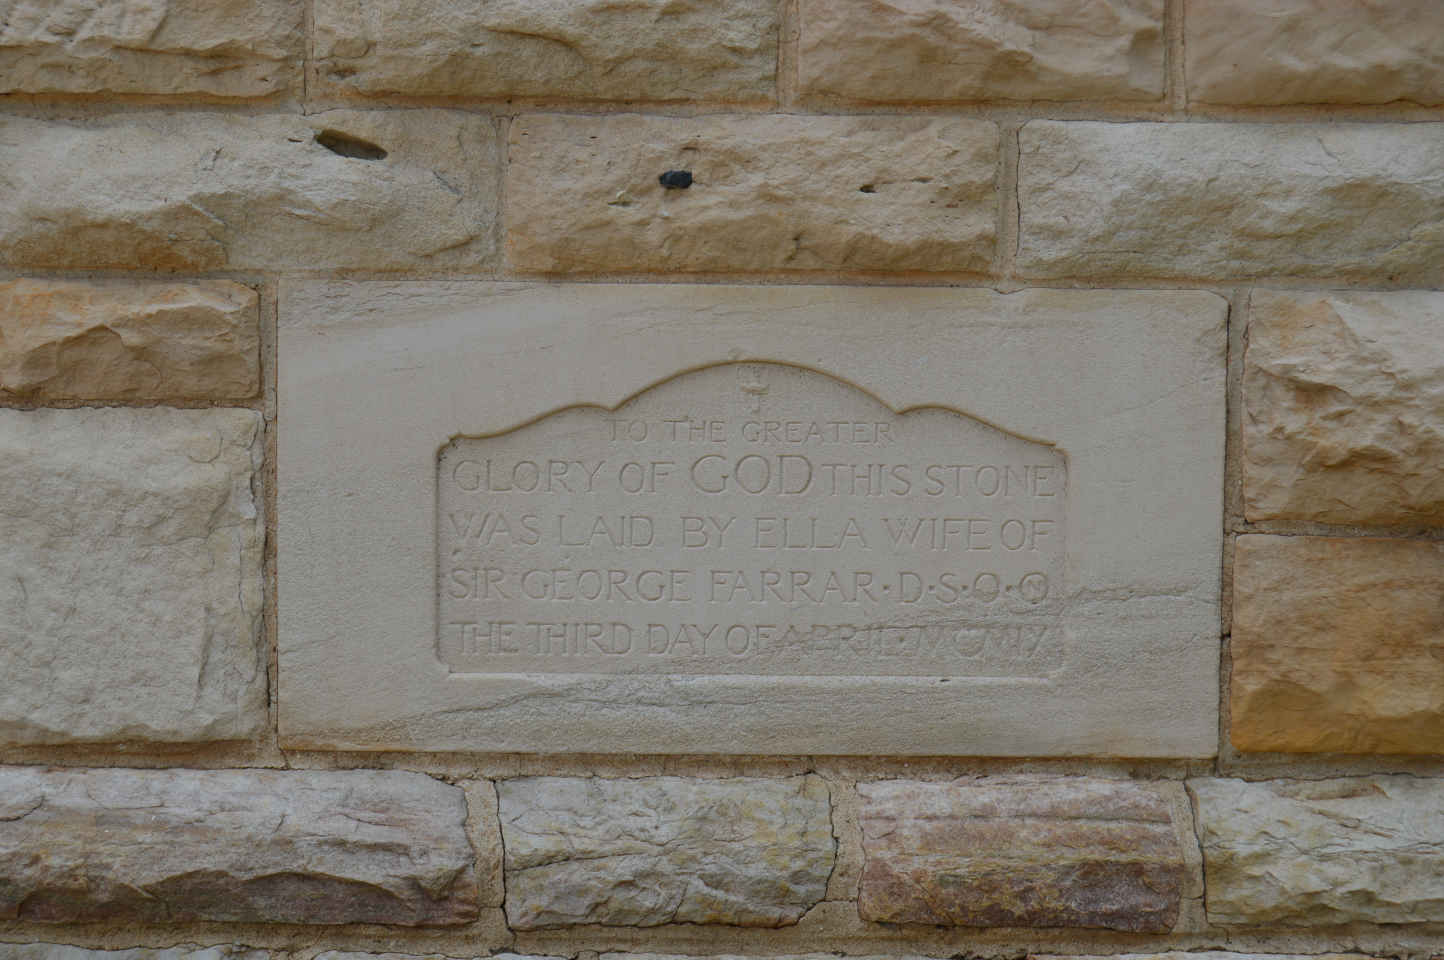 05. This stone was laid by Ella, wife of Sir George FARRAR